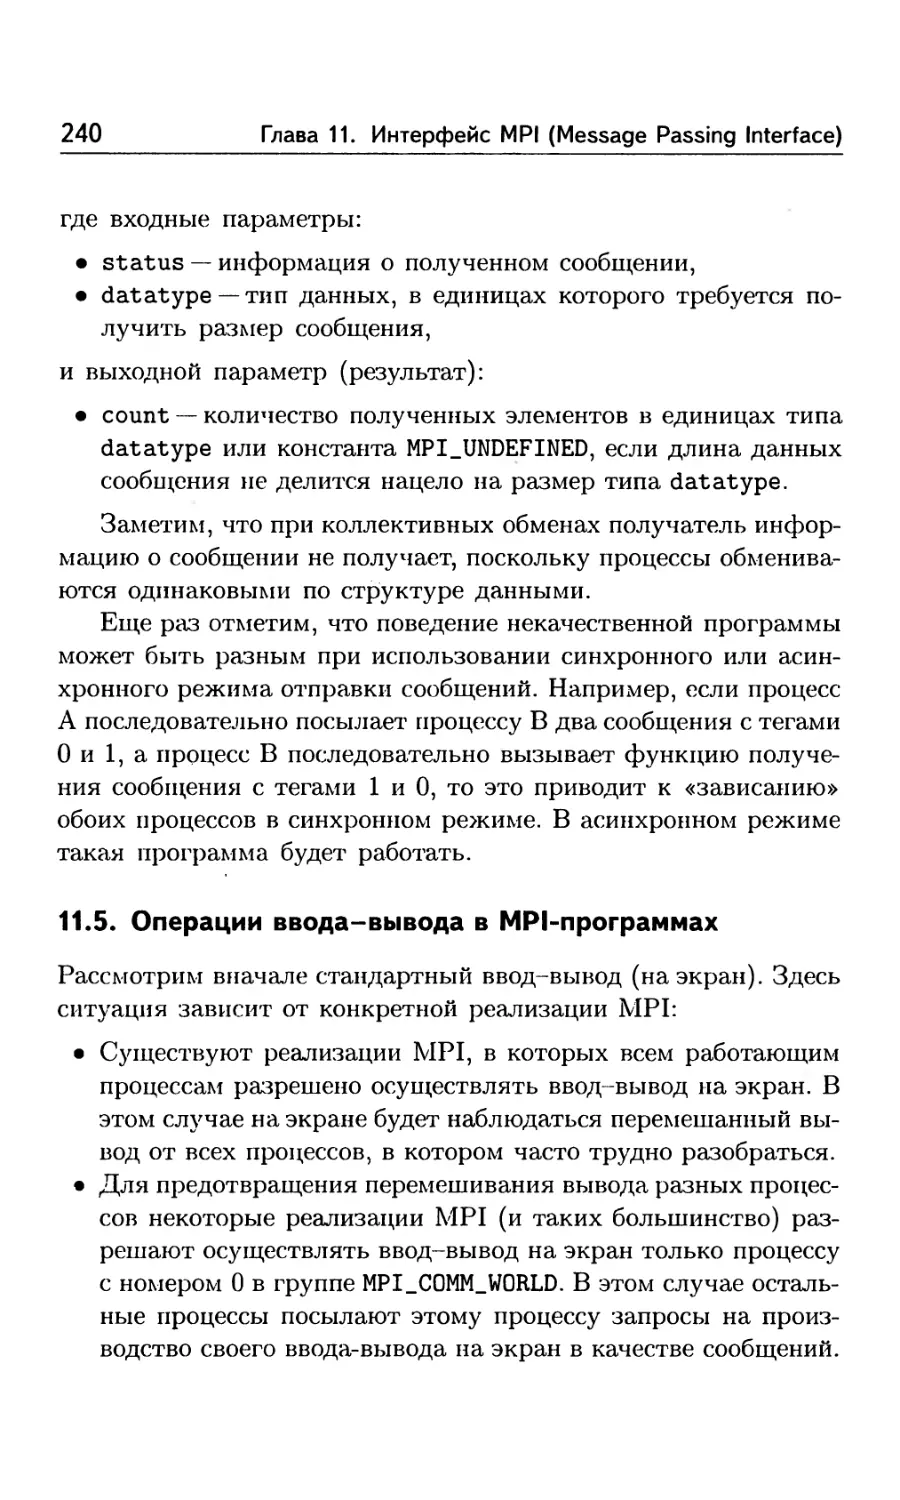 11.5. Операции ввода-вывода в MPI-программах